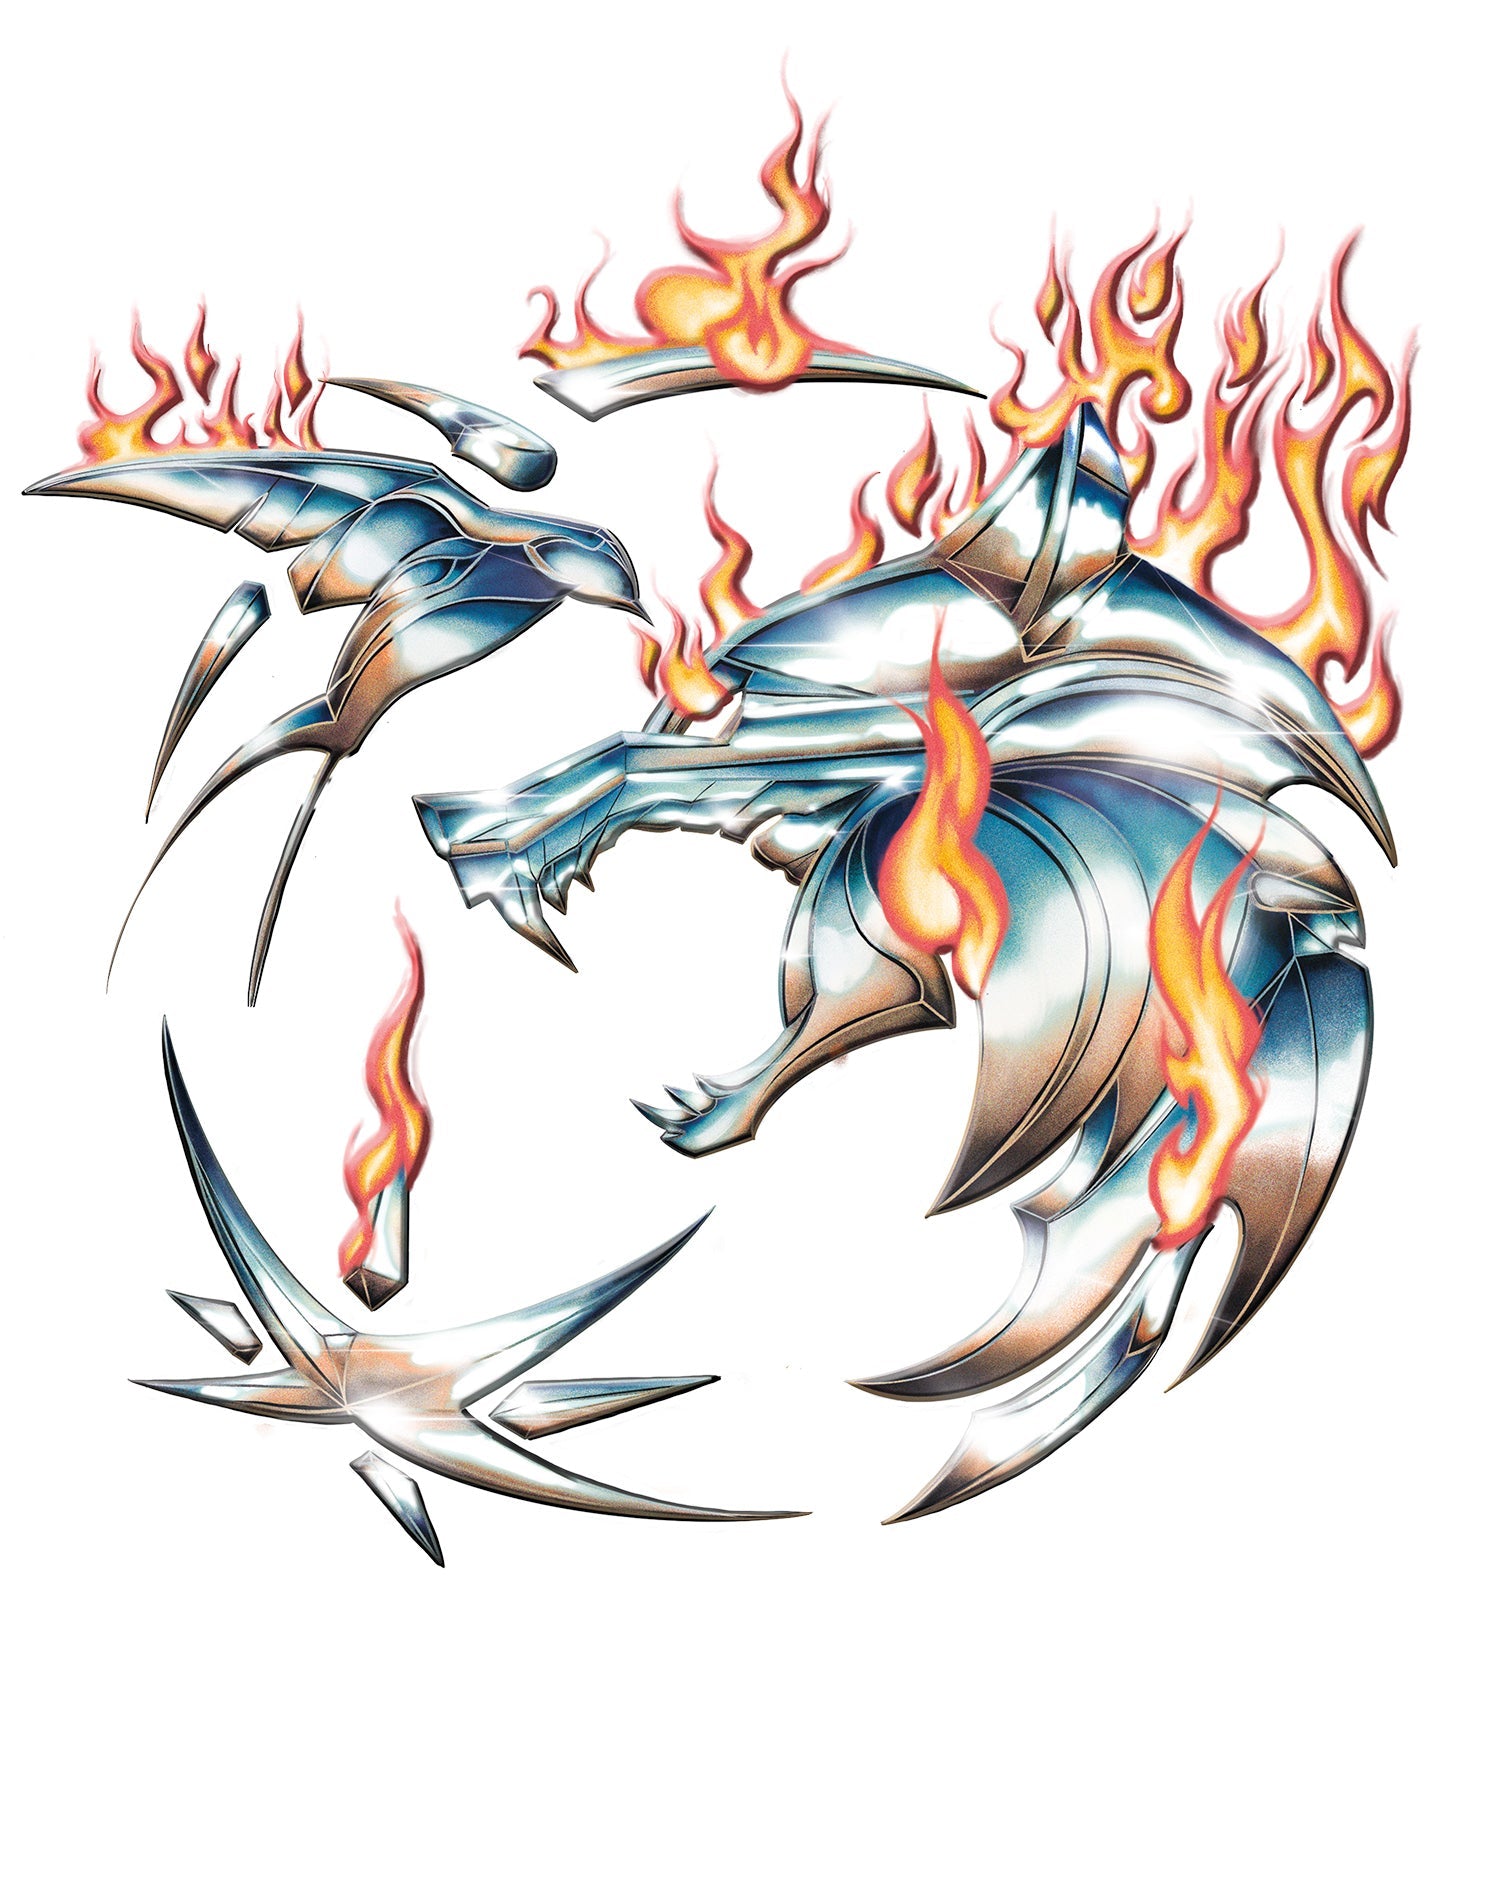 The Witcher Logo Metal Fire Official Men's T-Shirt